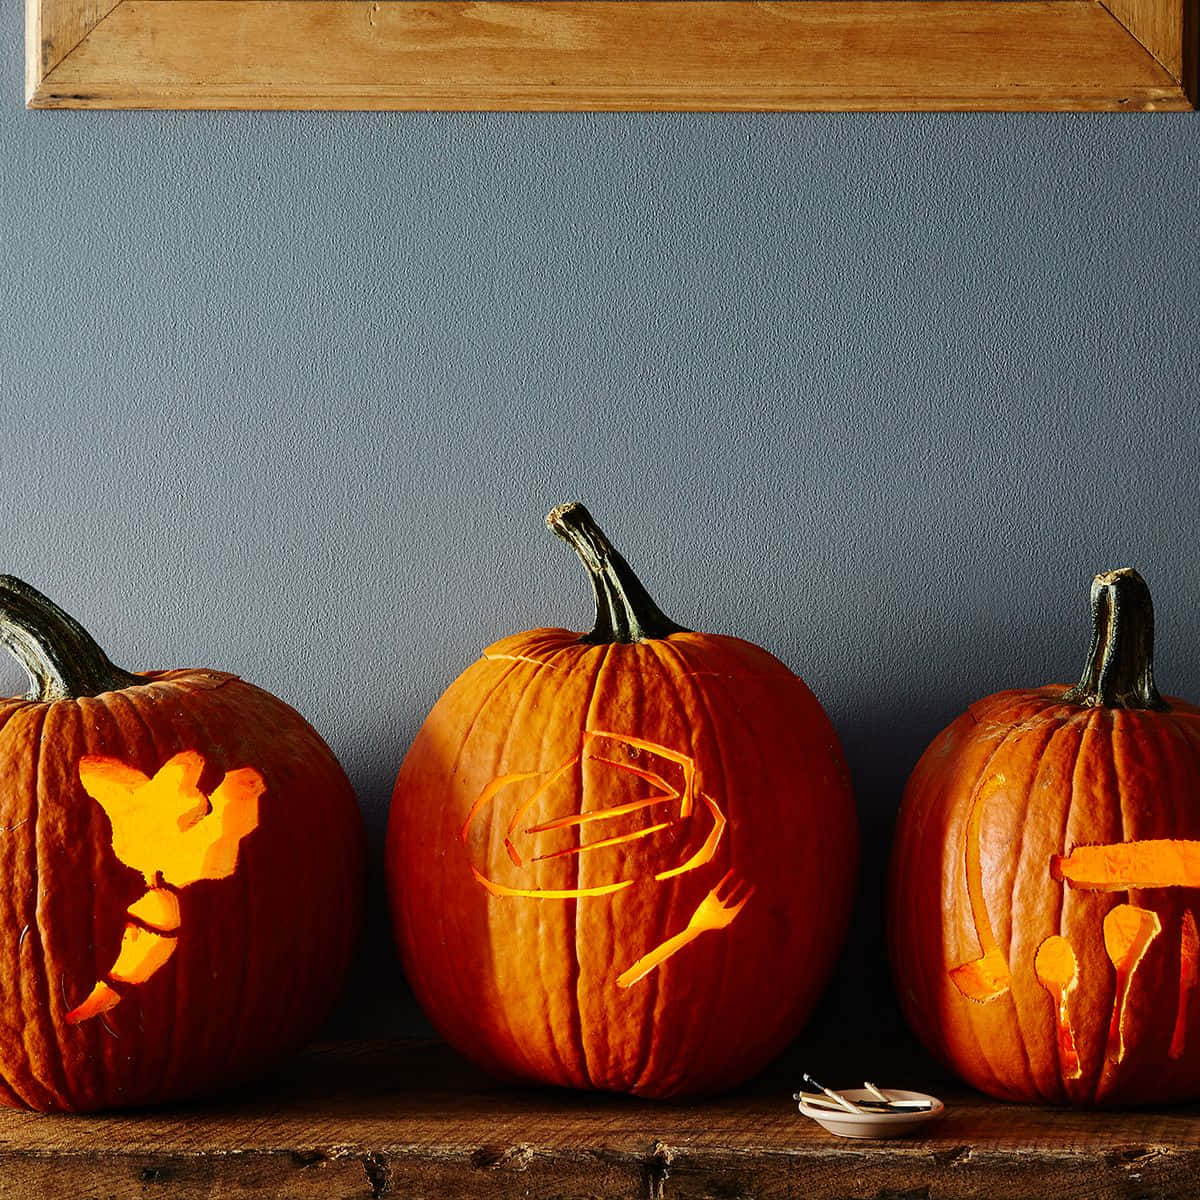 Art of Autumn - Vibrant Pumpkin Carving